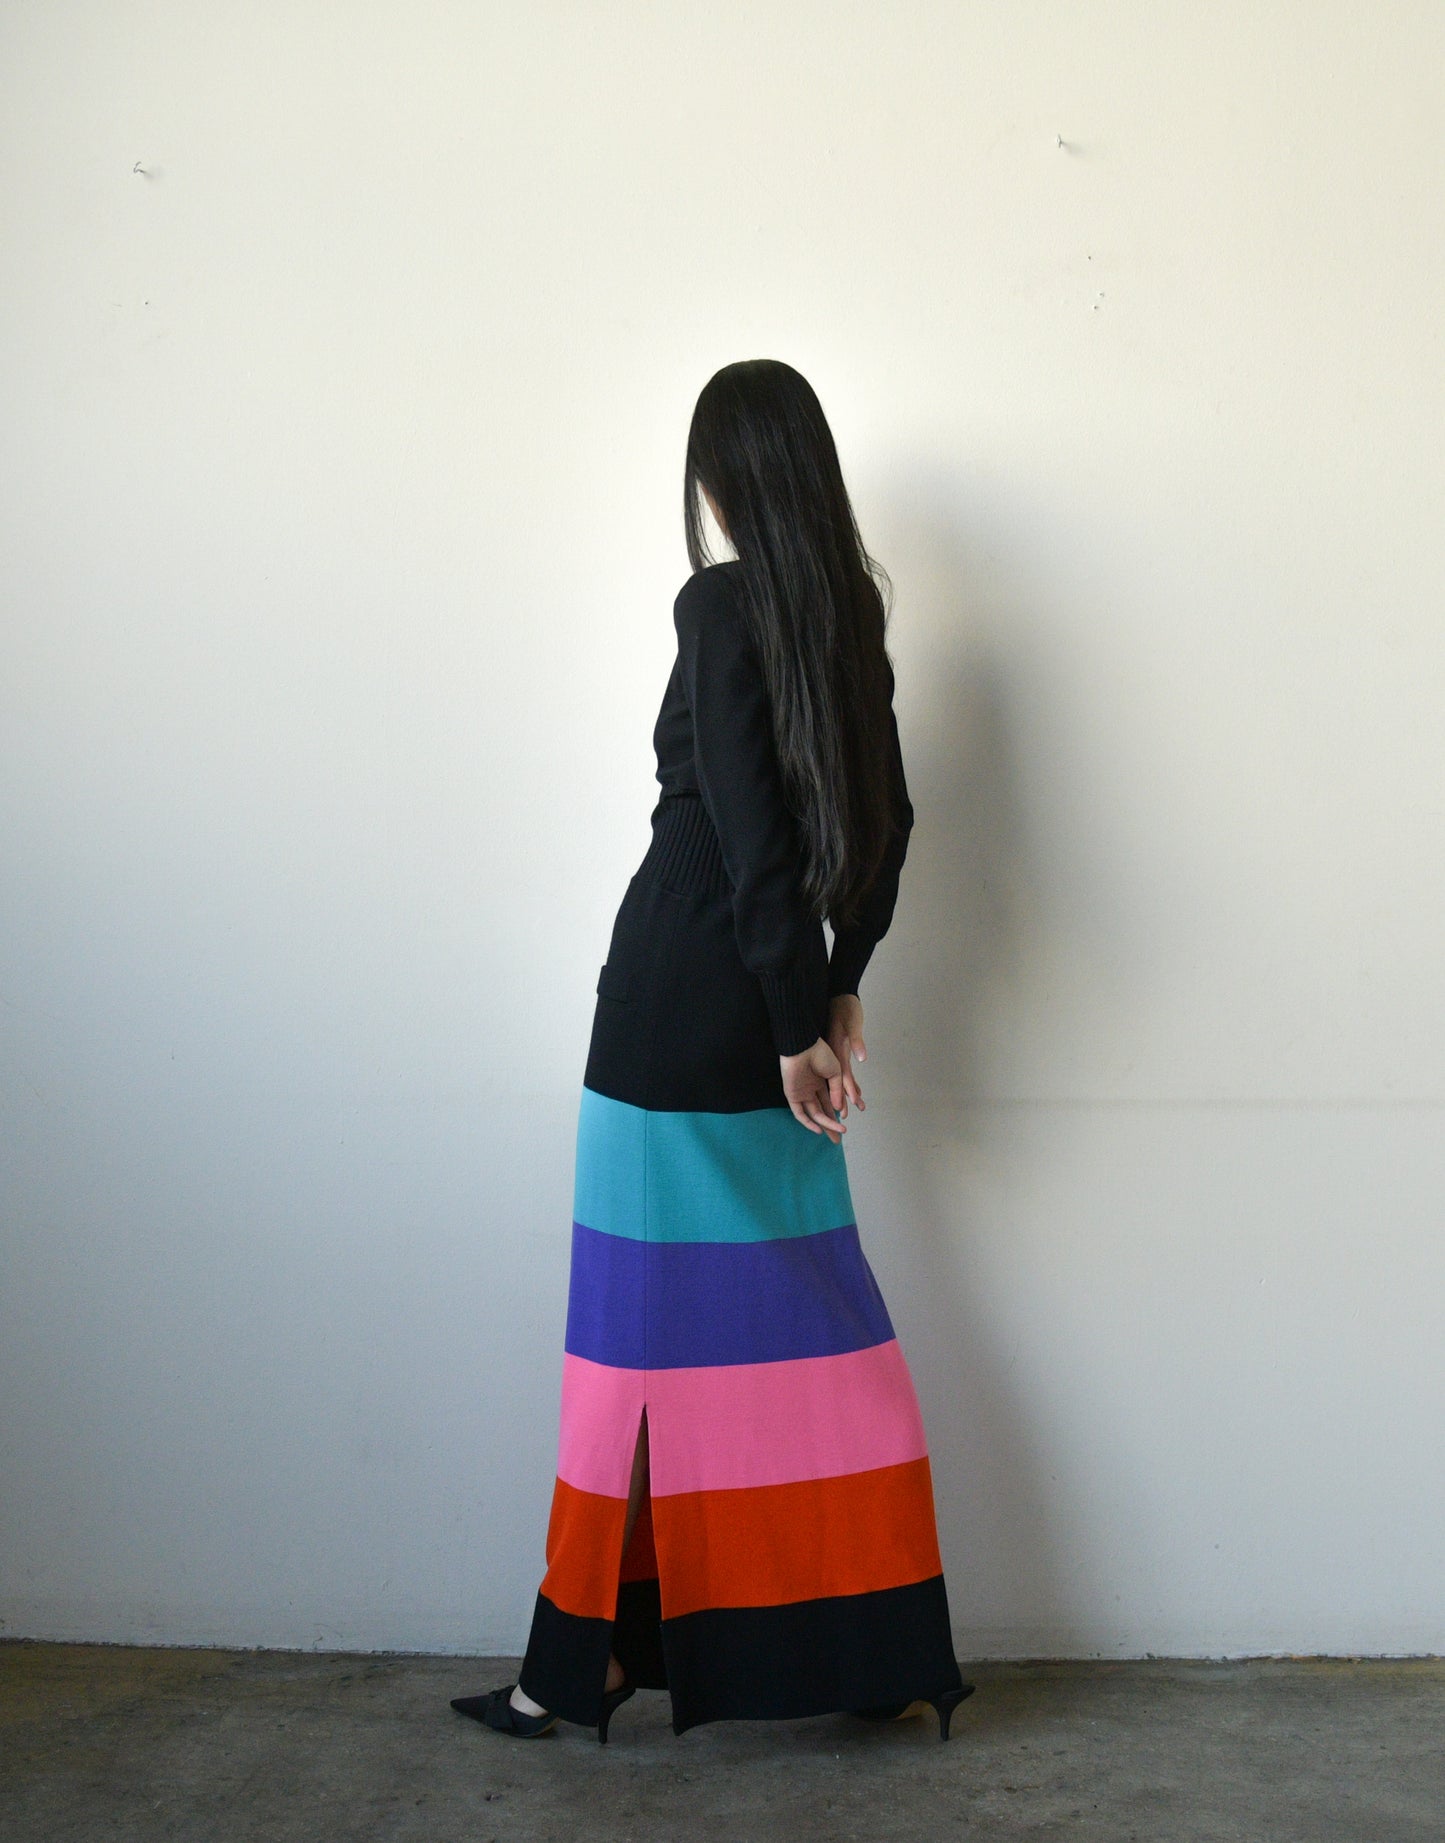 jean patou 1960s rainbow knit dress